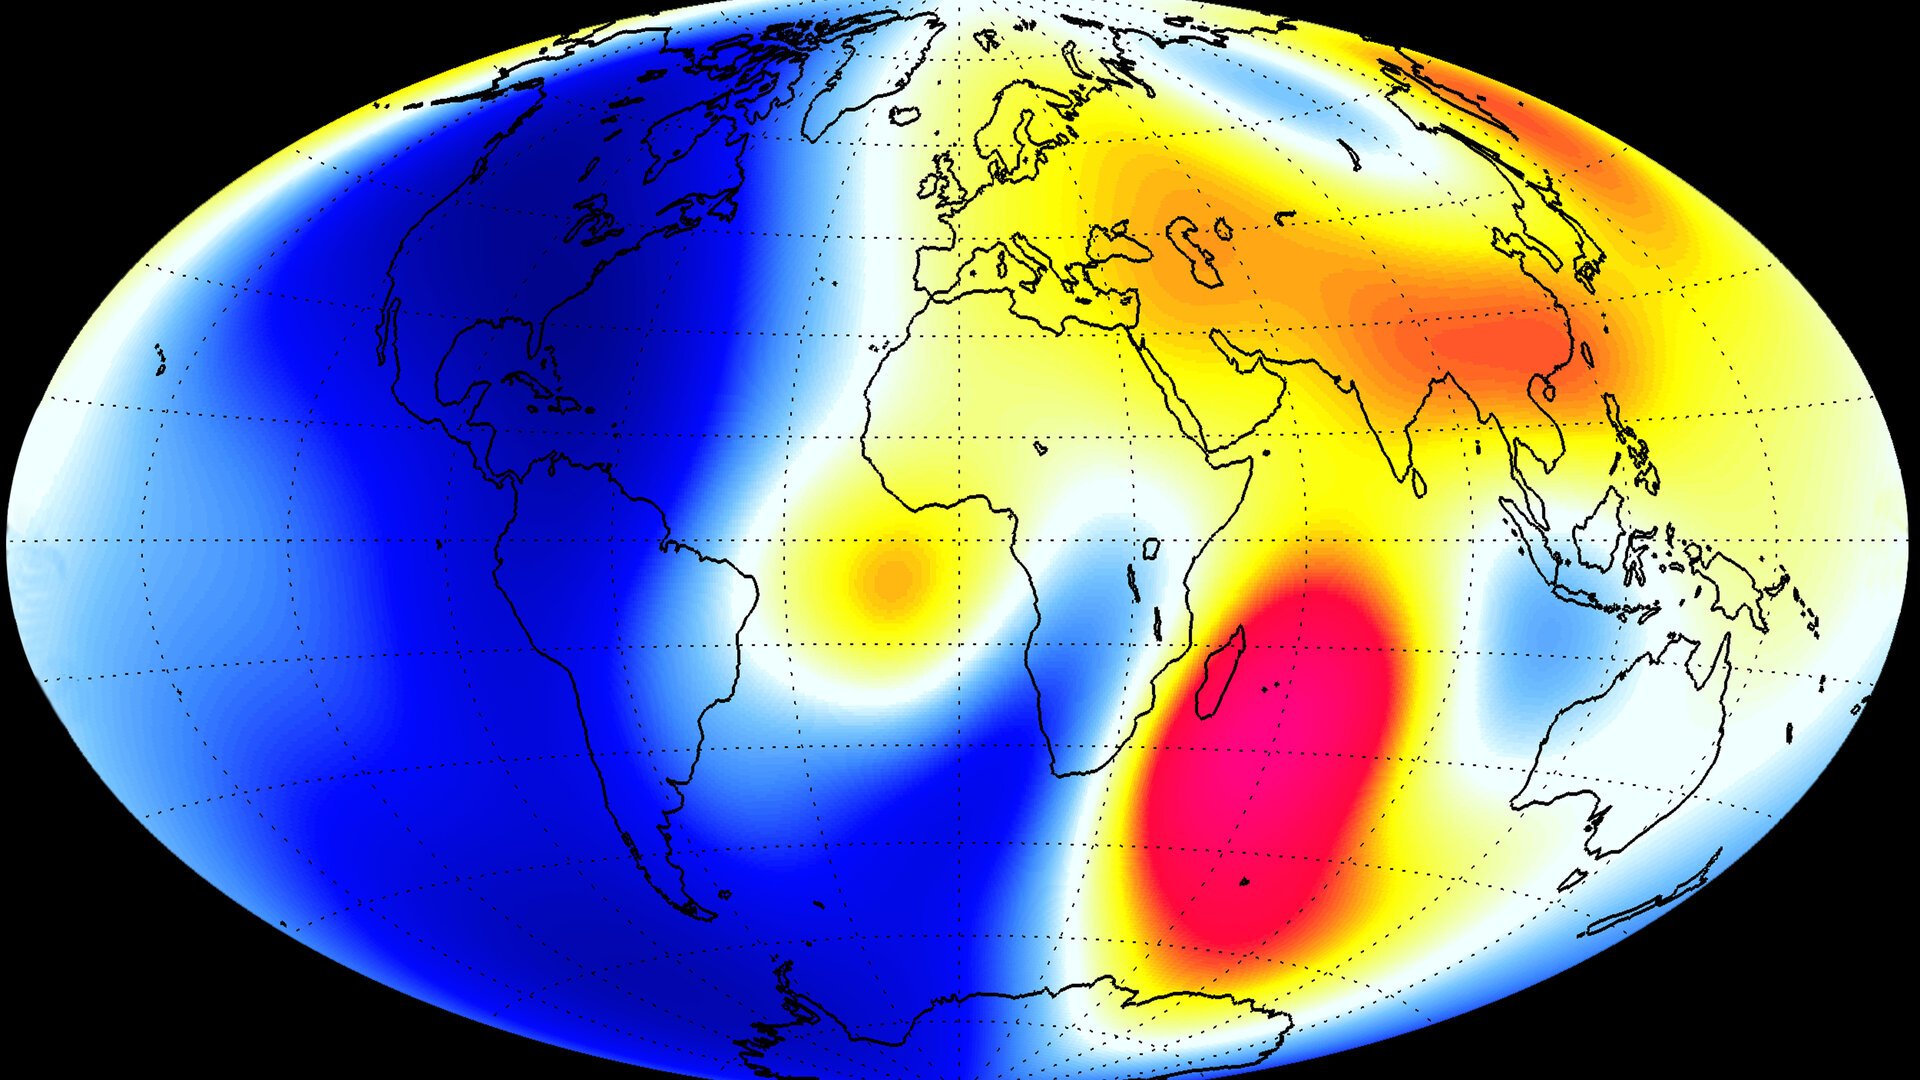 عکس مرکز انرژی های مغناطیسی کره زمین با طیف های رنگی متفاوت 